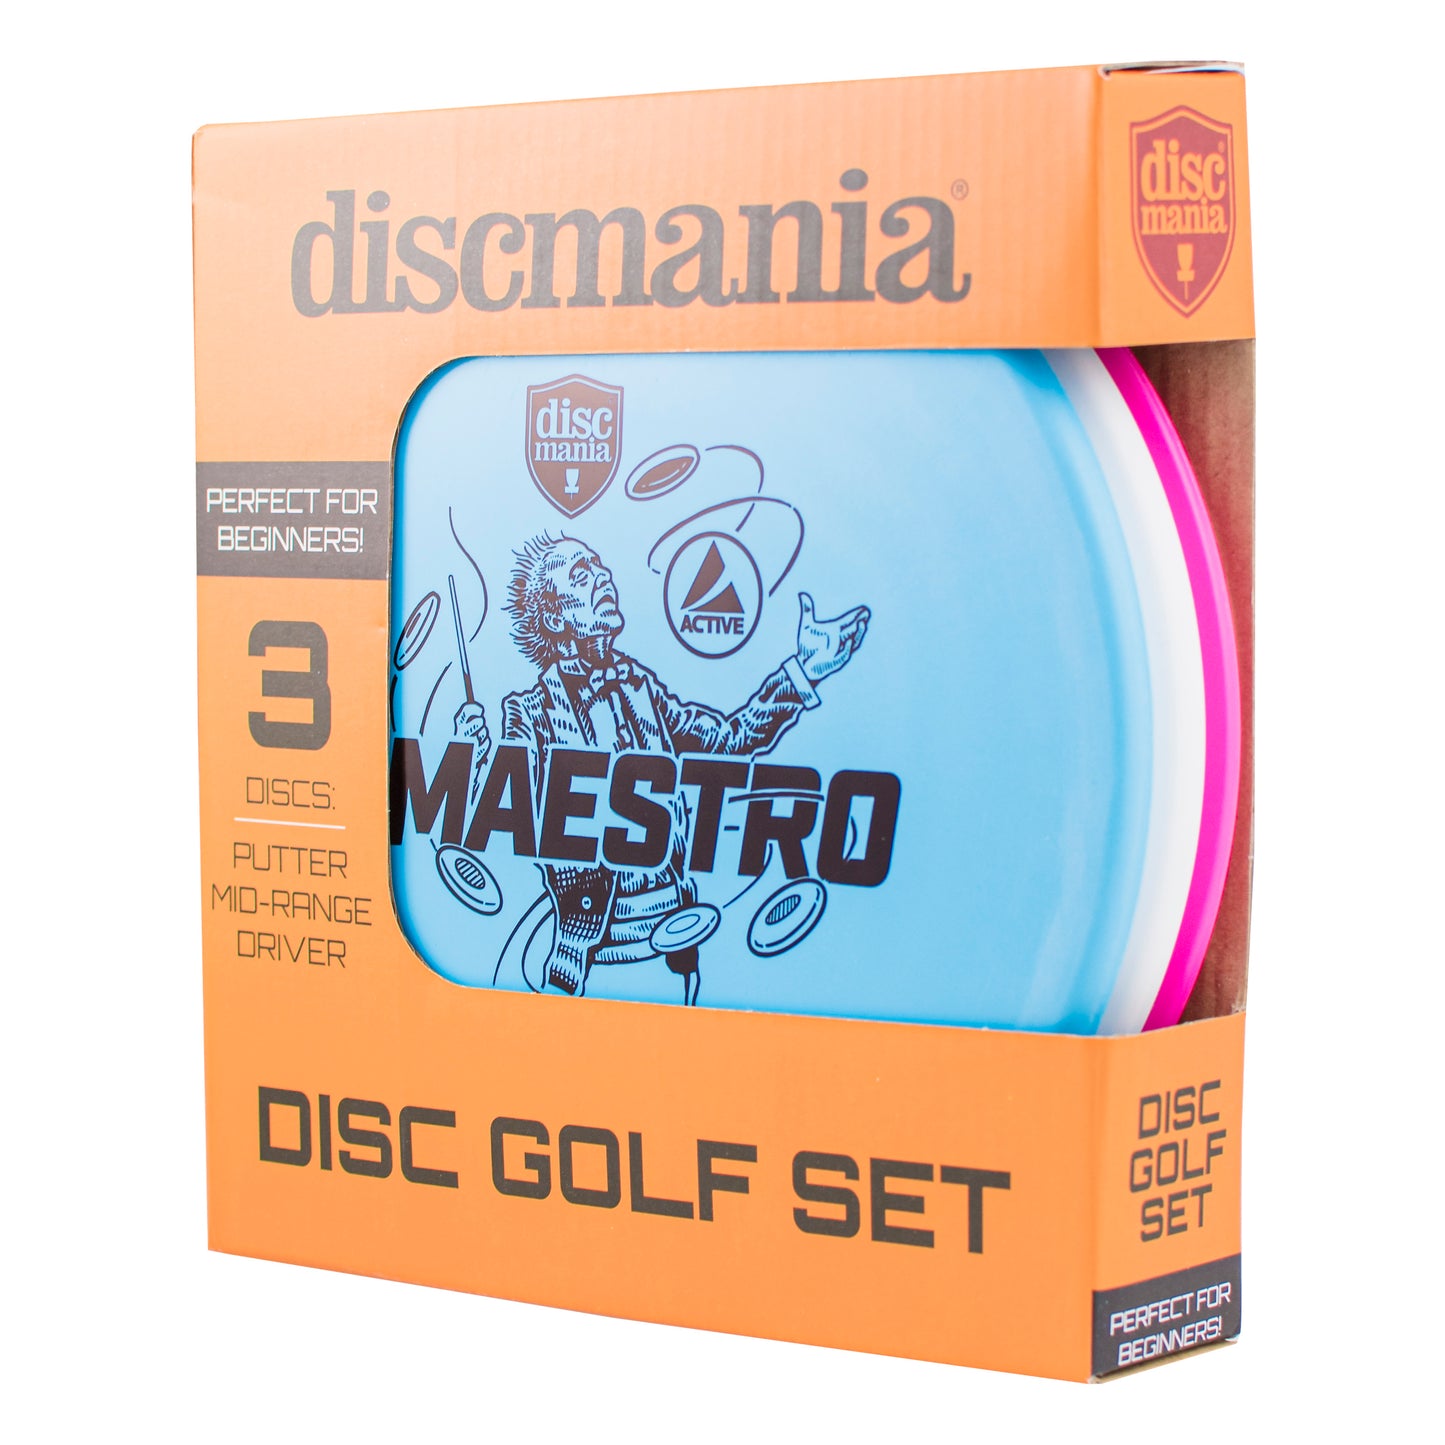 Discamnia Active 3 Disc set